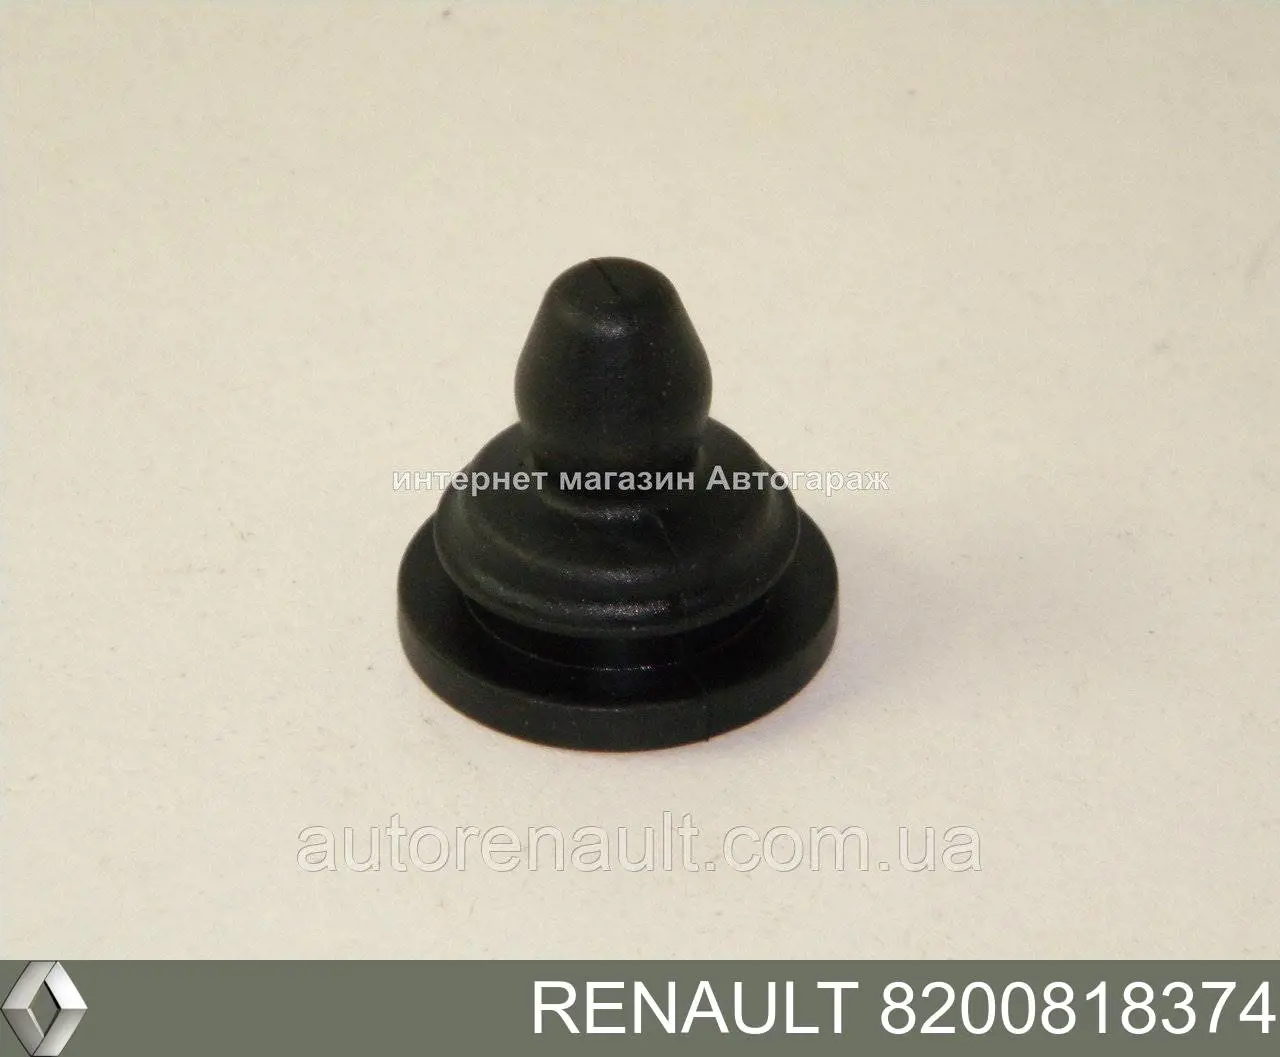 8200818374 Renault (RVI) consola de filtro de ar